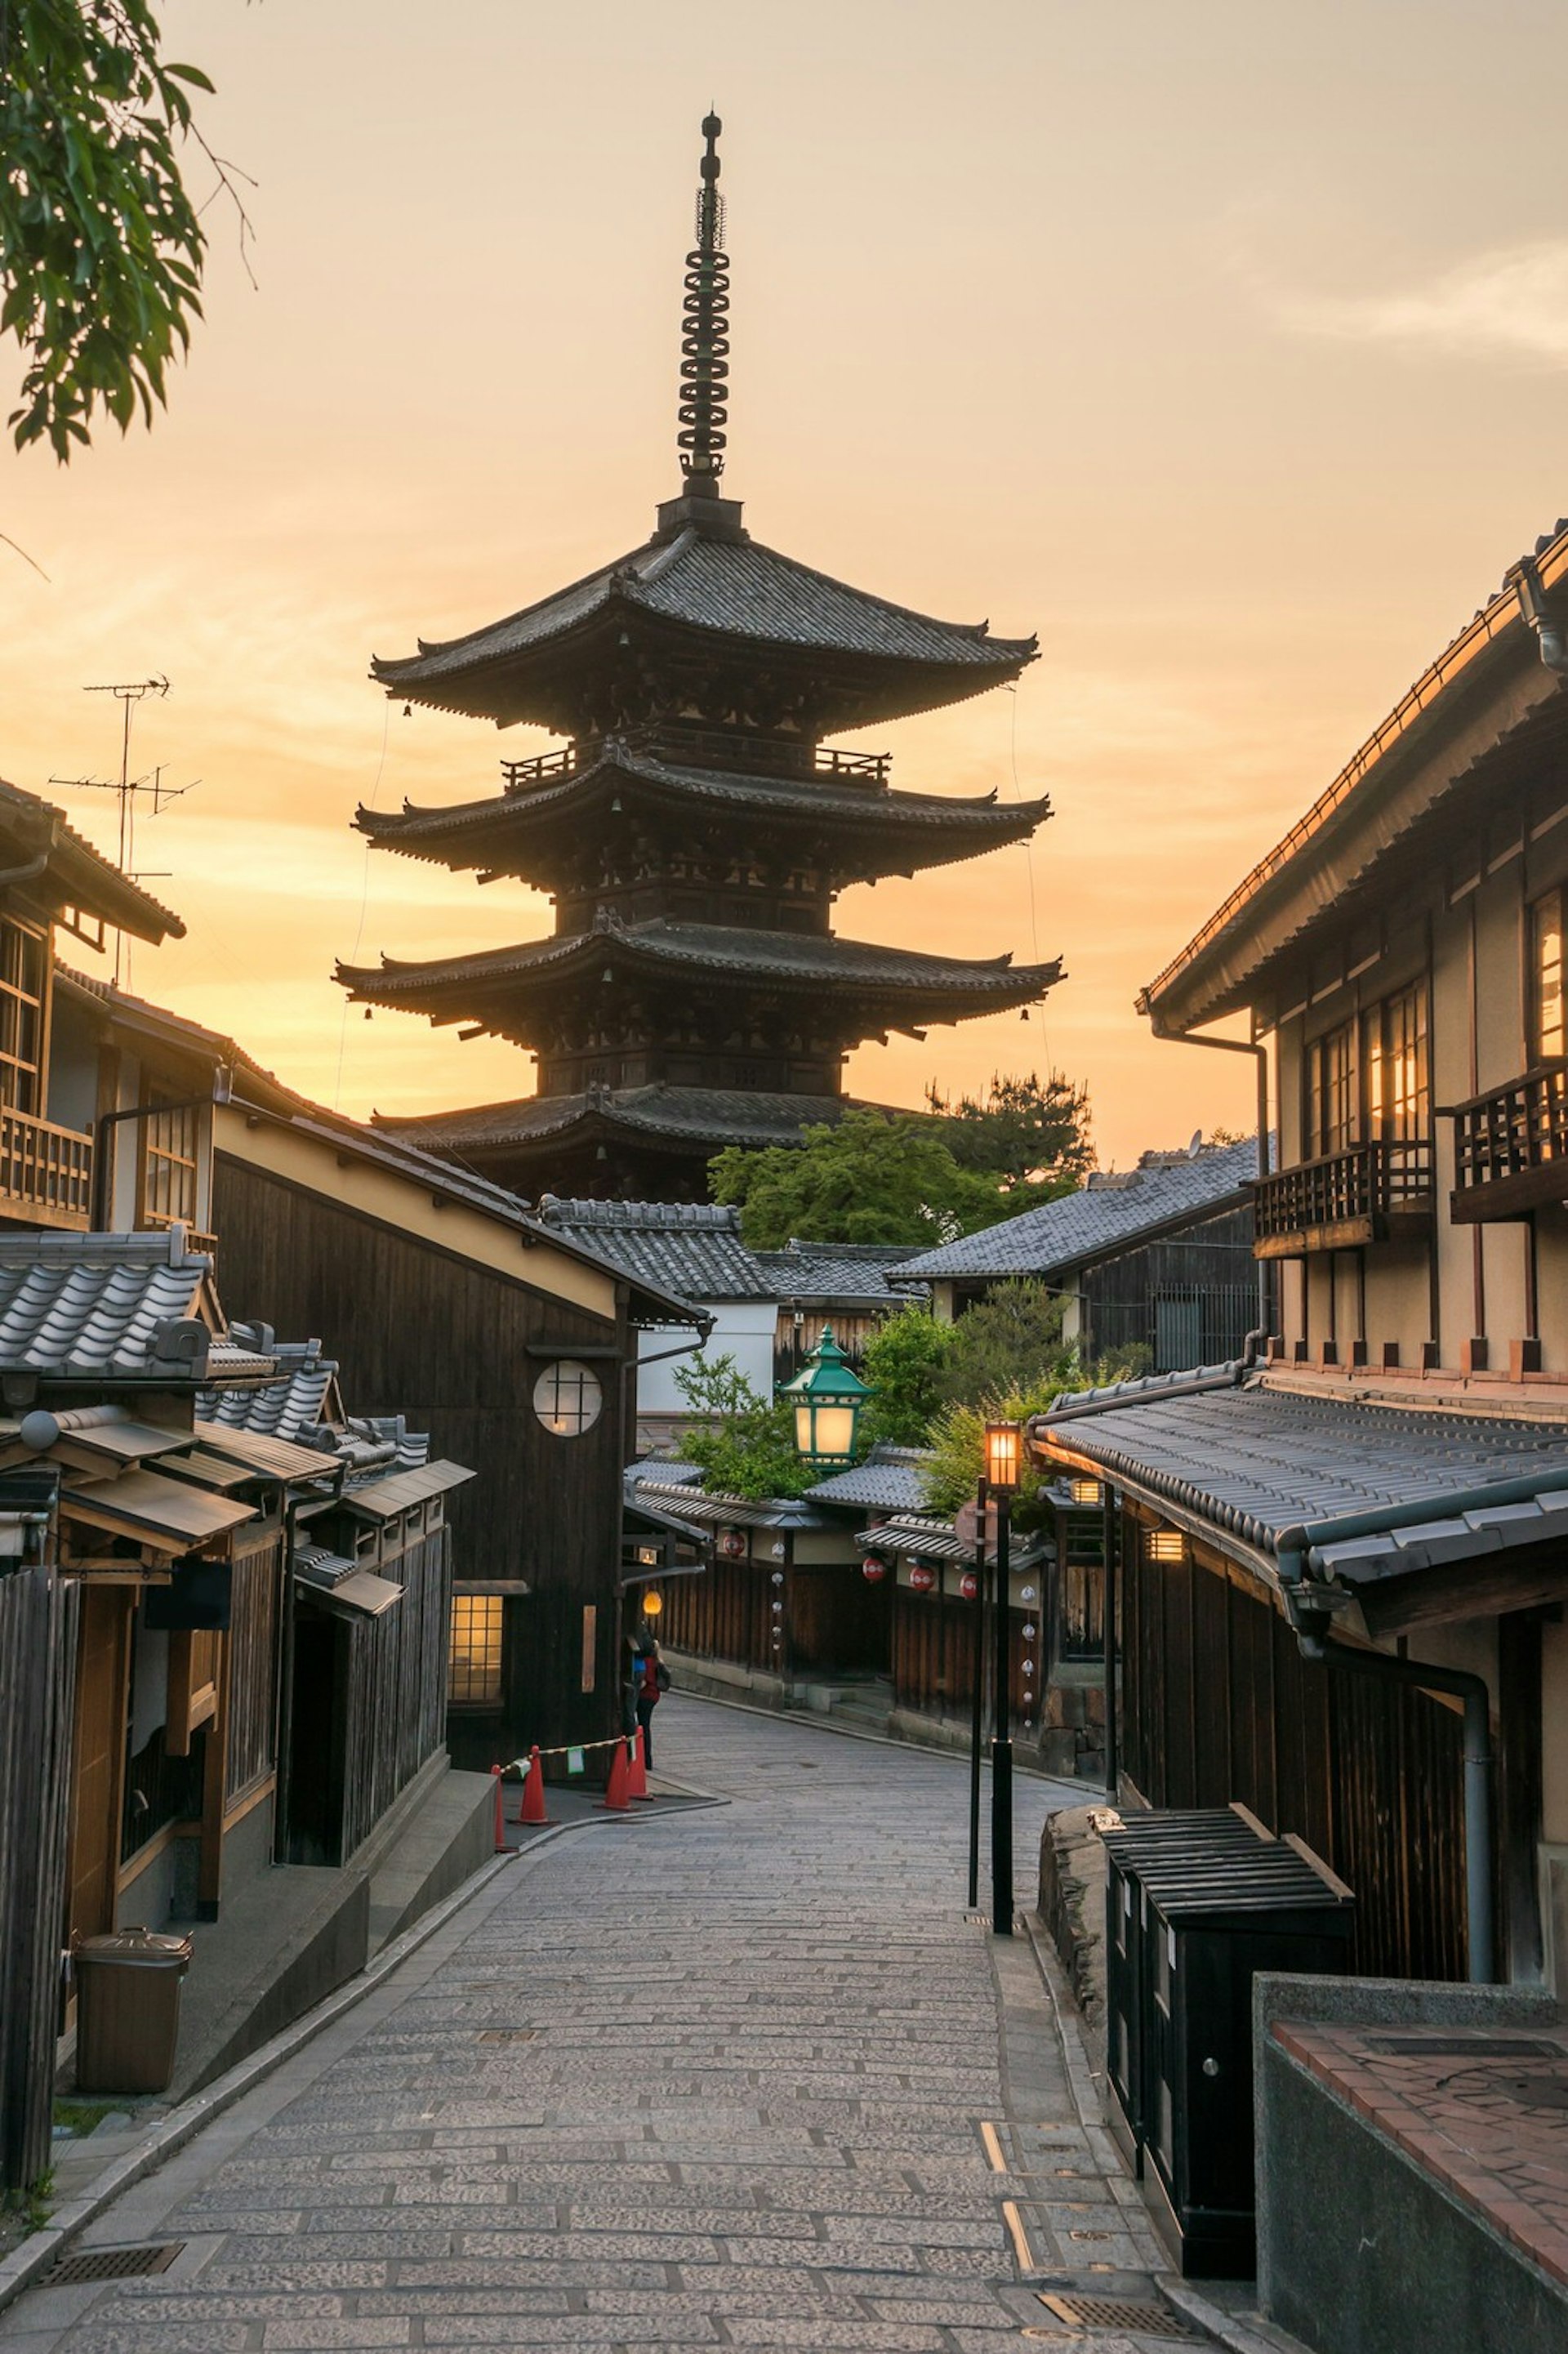 Yasaka pagoda looks over a Gion street at dusk in Kyoto